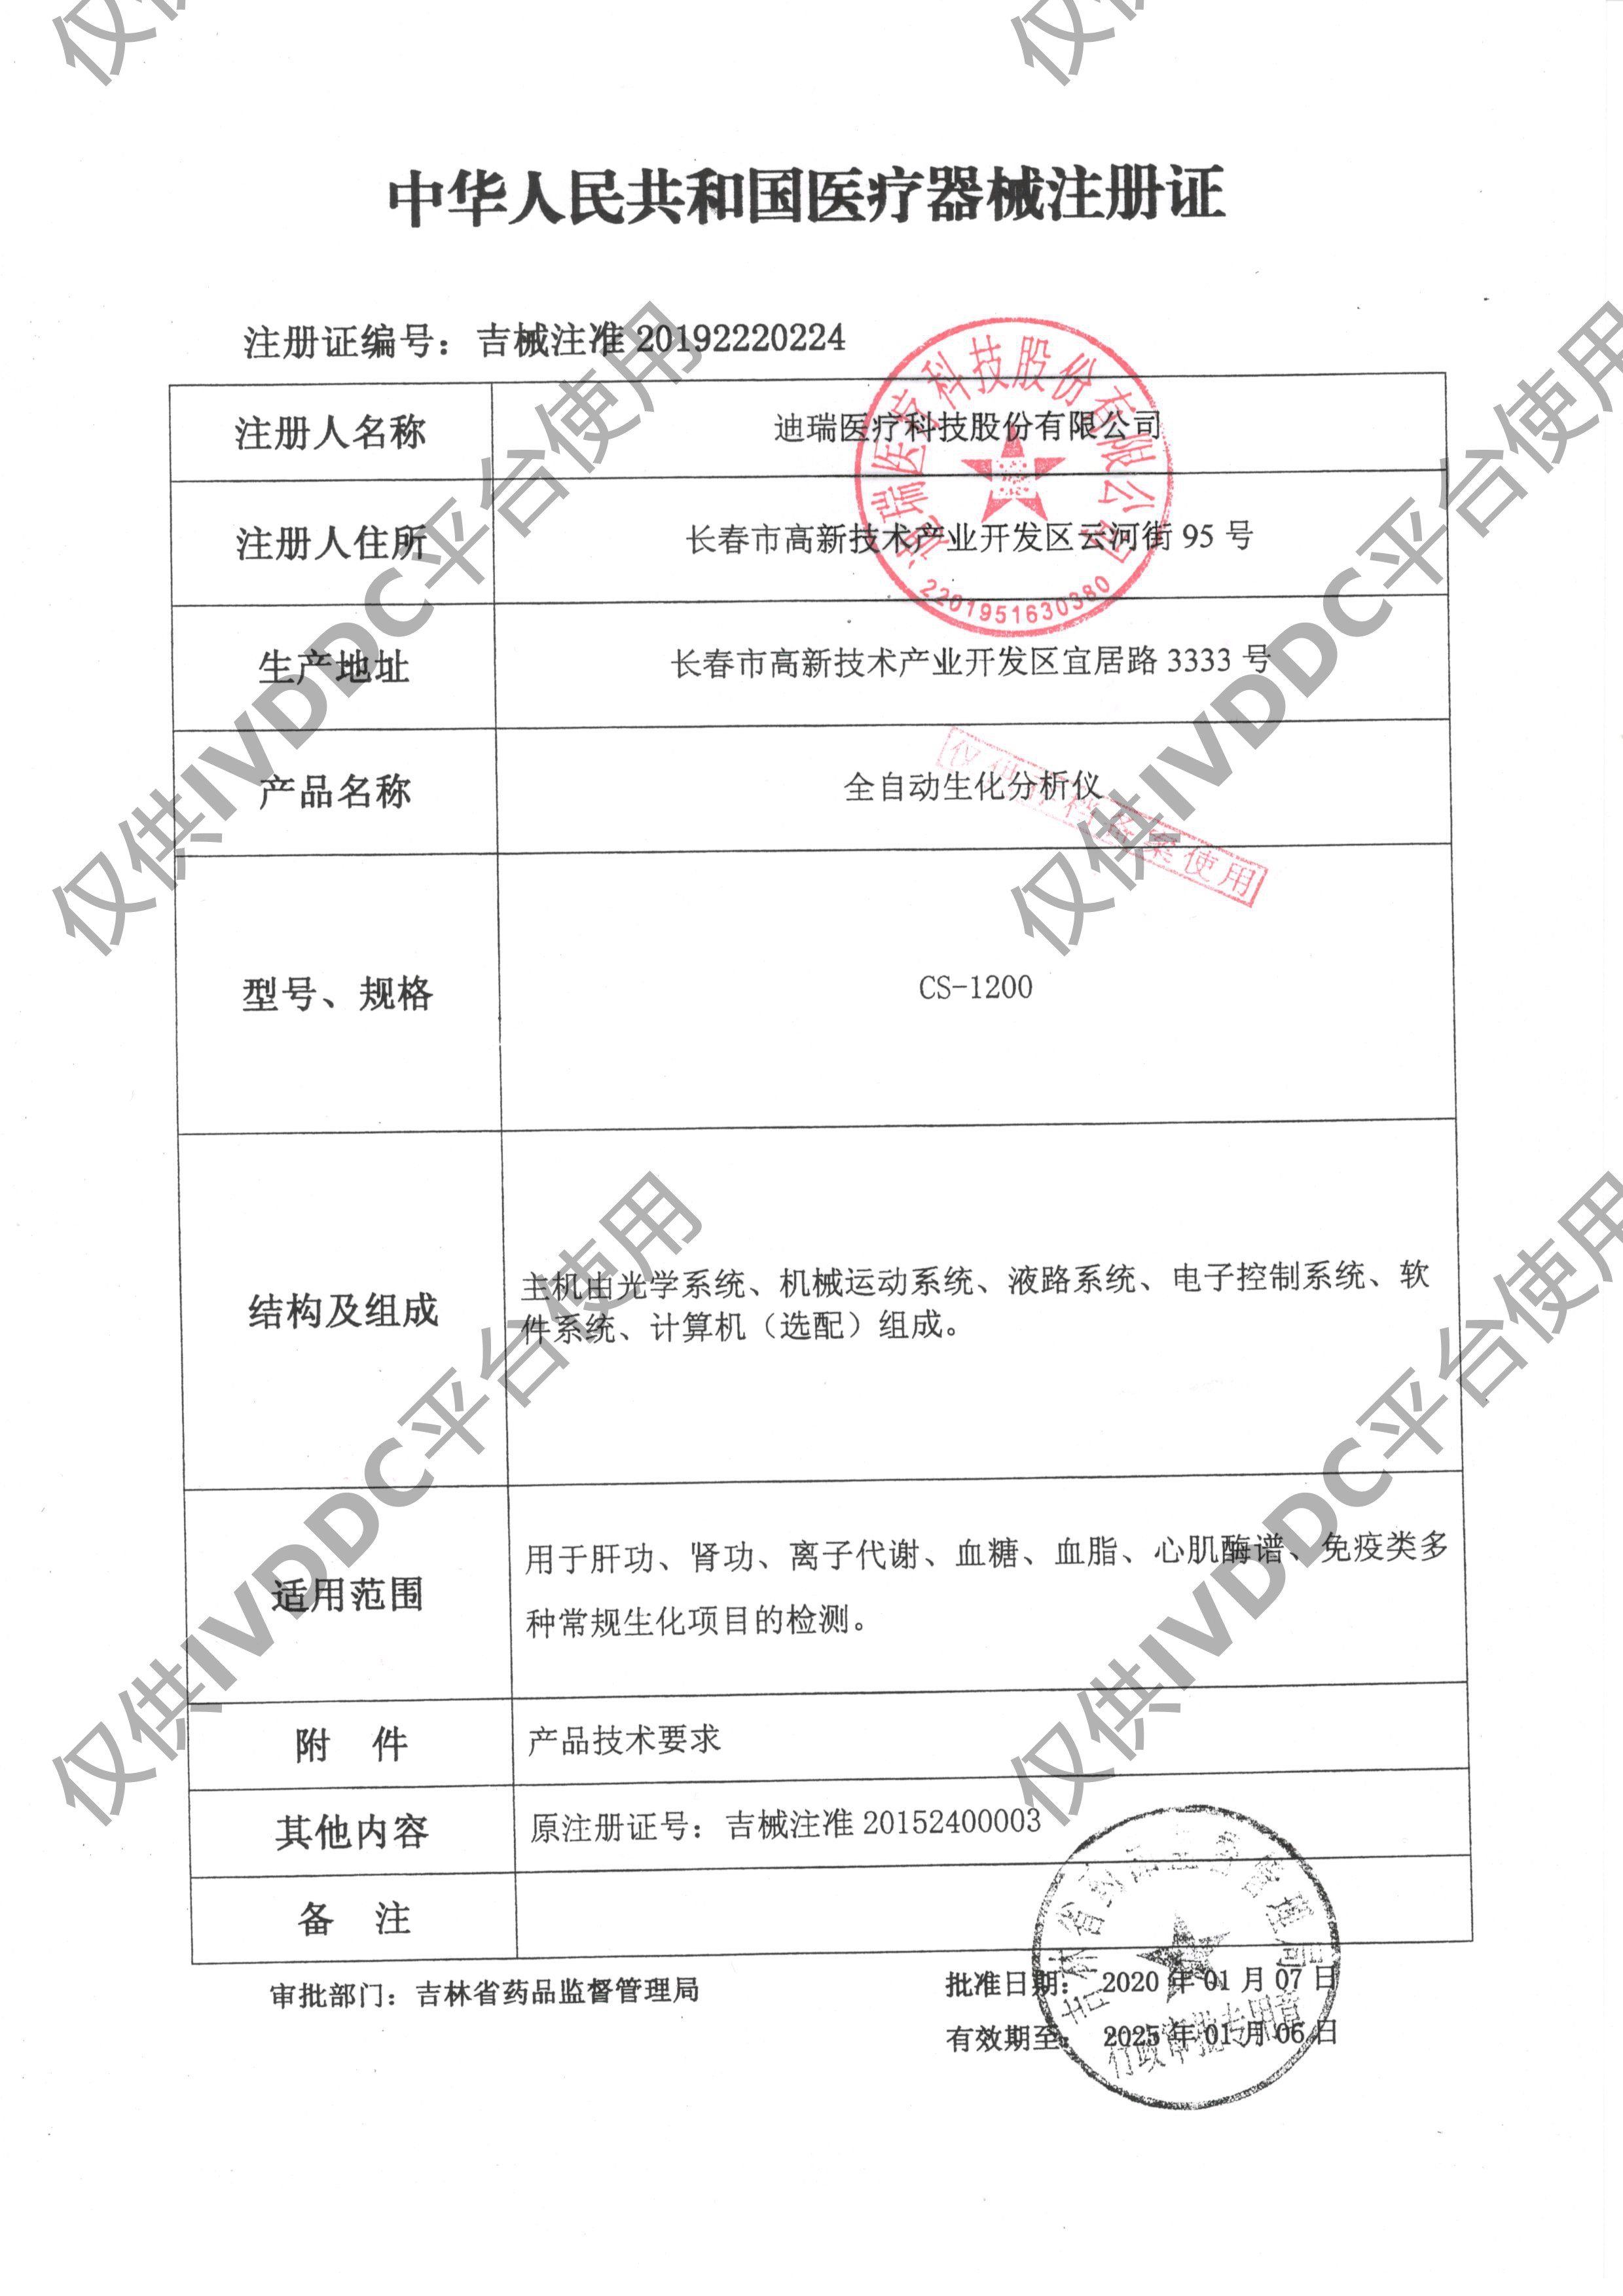 【长春迪瑞】 全自动生化分析仪 CS-1200注册证